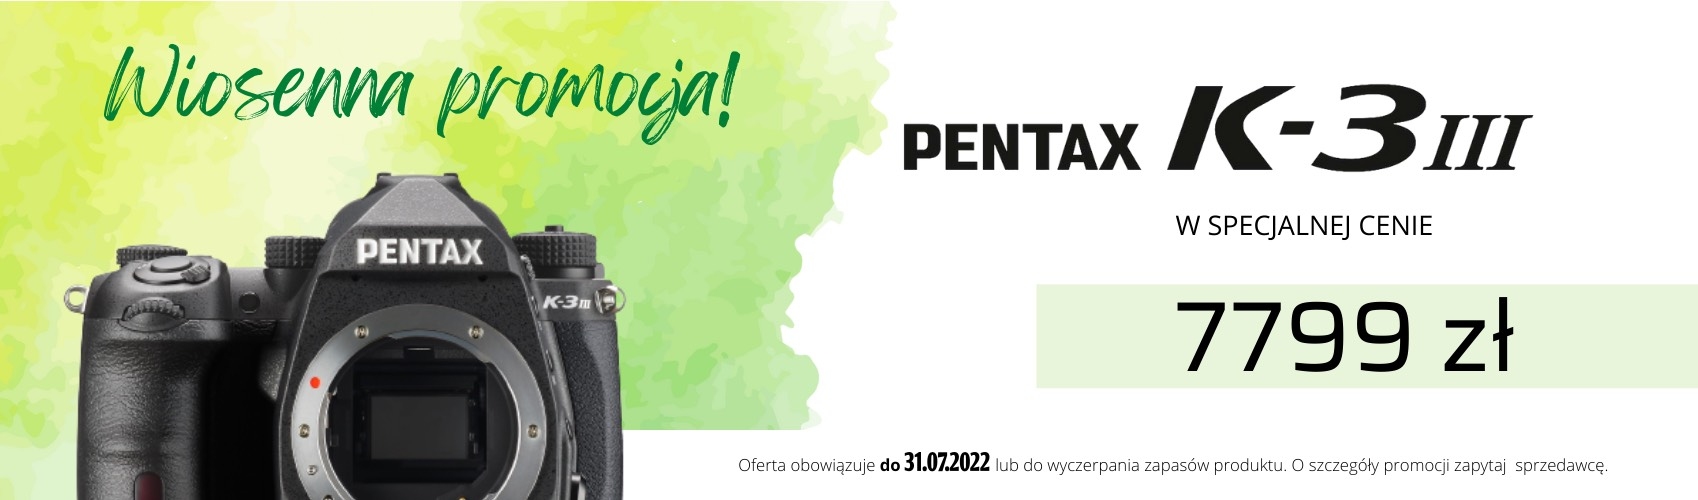 Teraz Pentax K-3III w specjalnej cenie 7799 zł